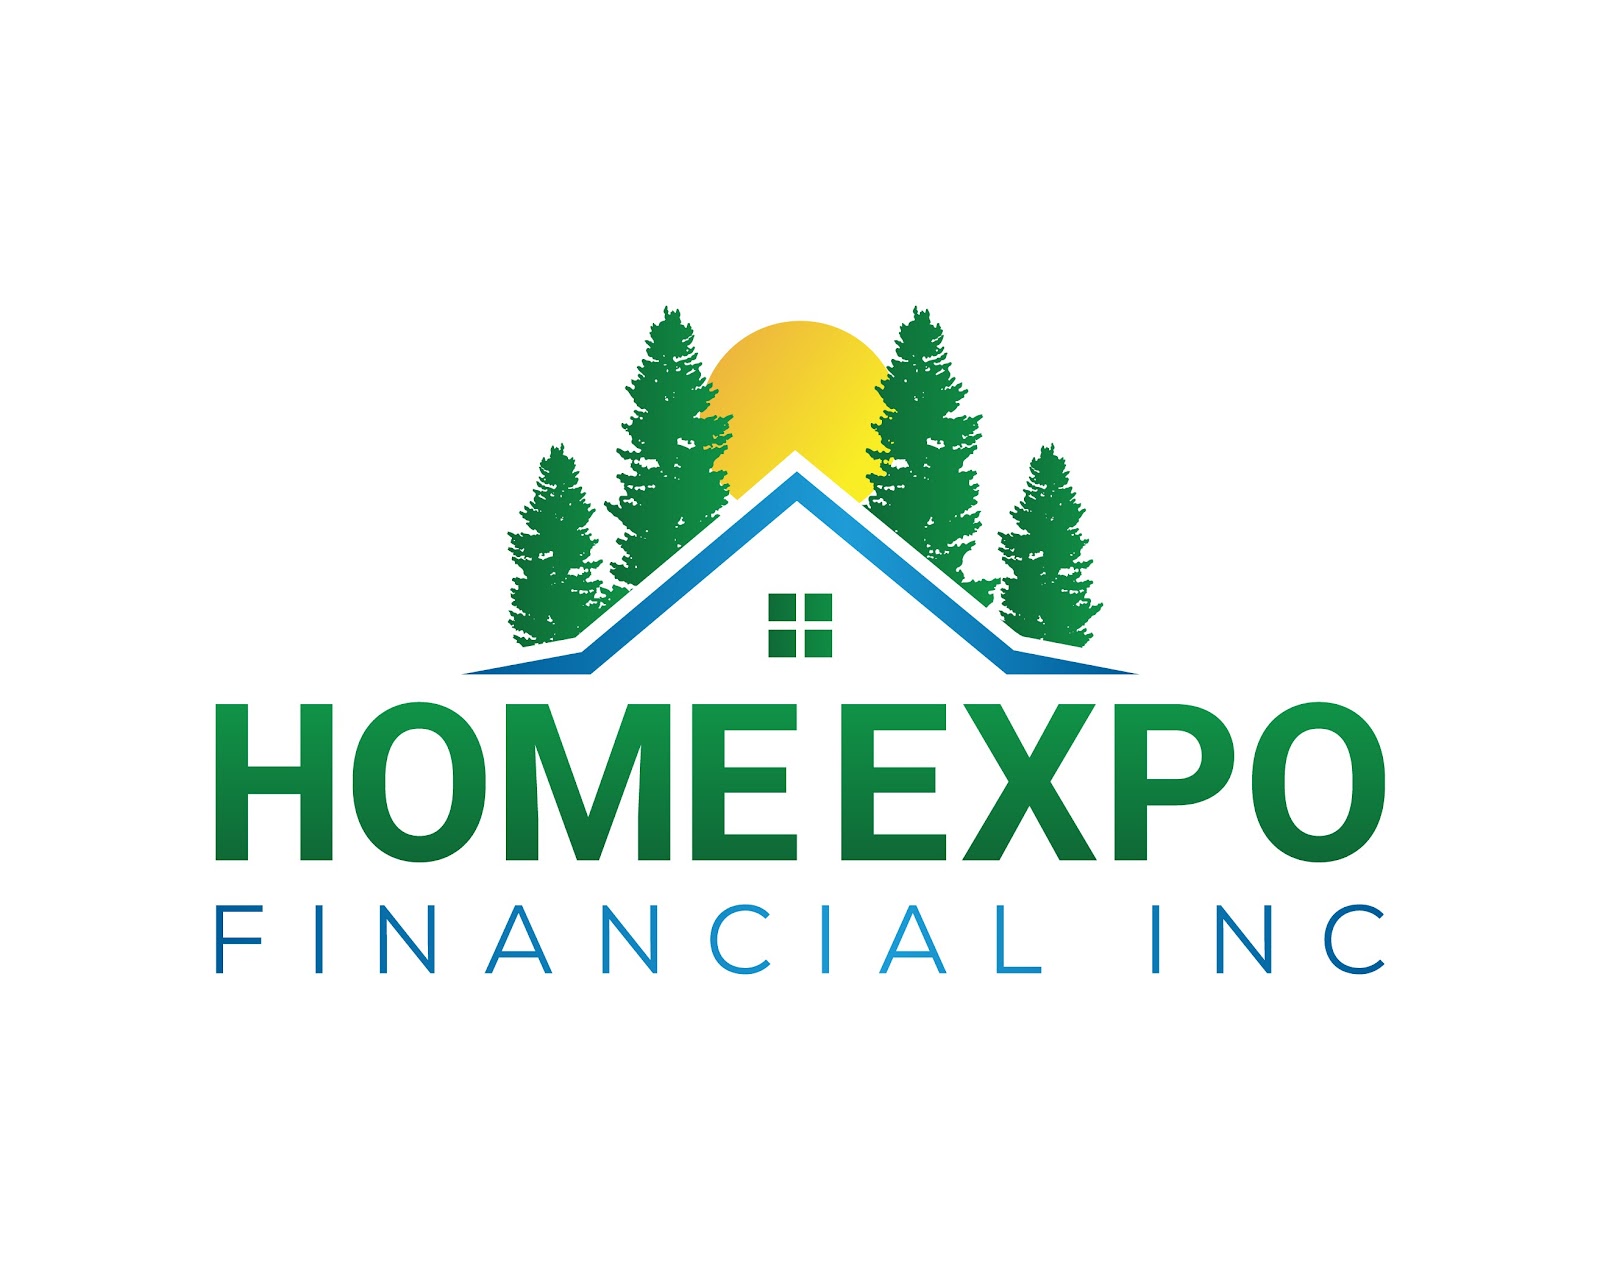 Home Expo Financial